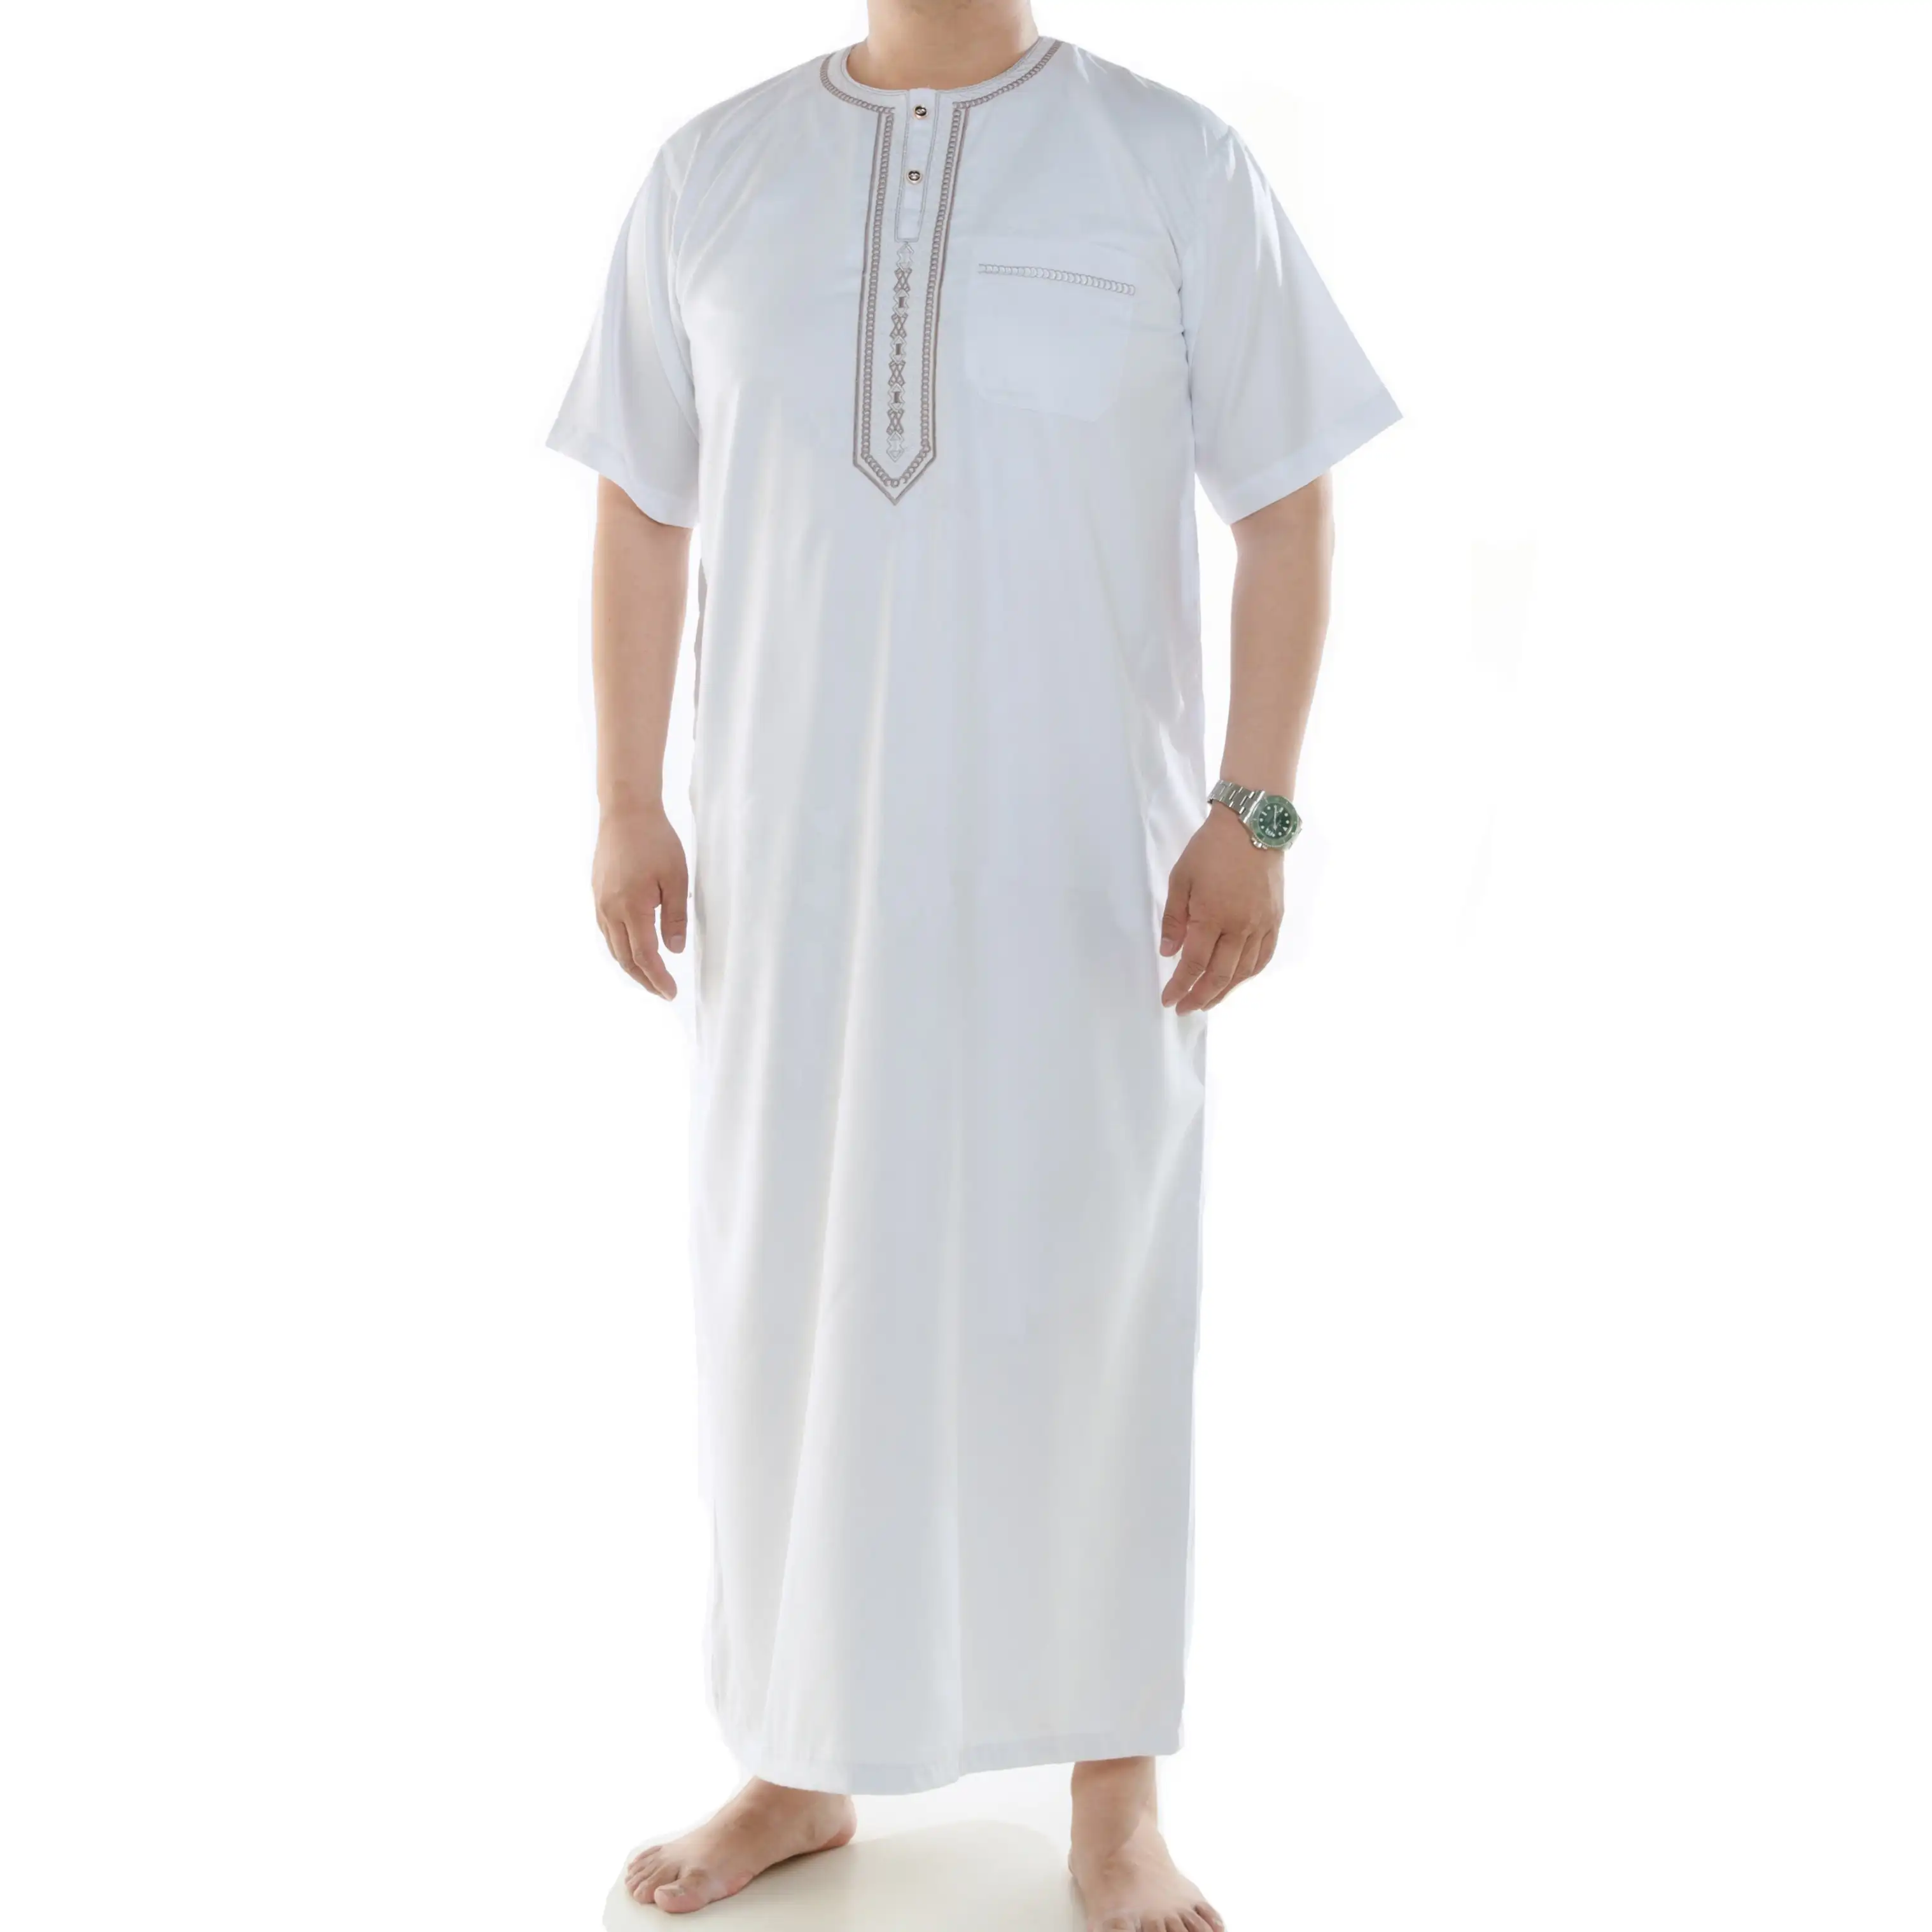 Baju Gamis/Muslim Kurta Panjang, Baju Gamis/Jubba/Gamis